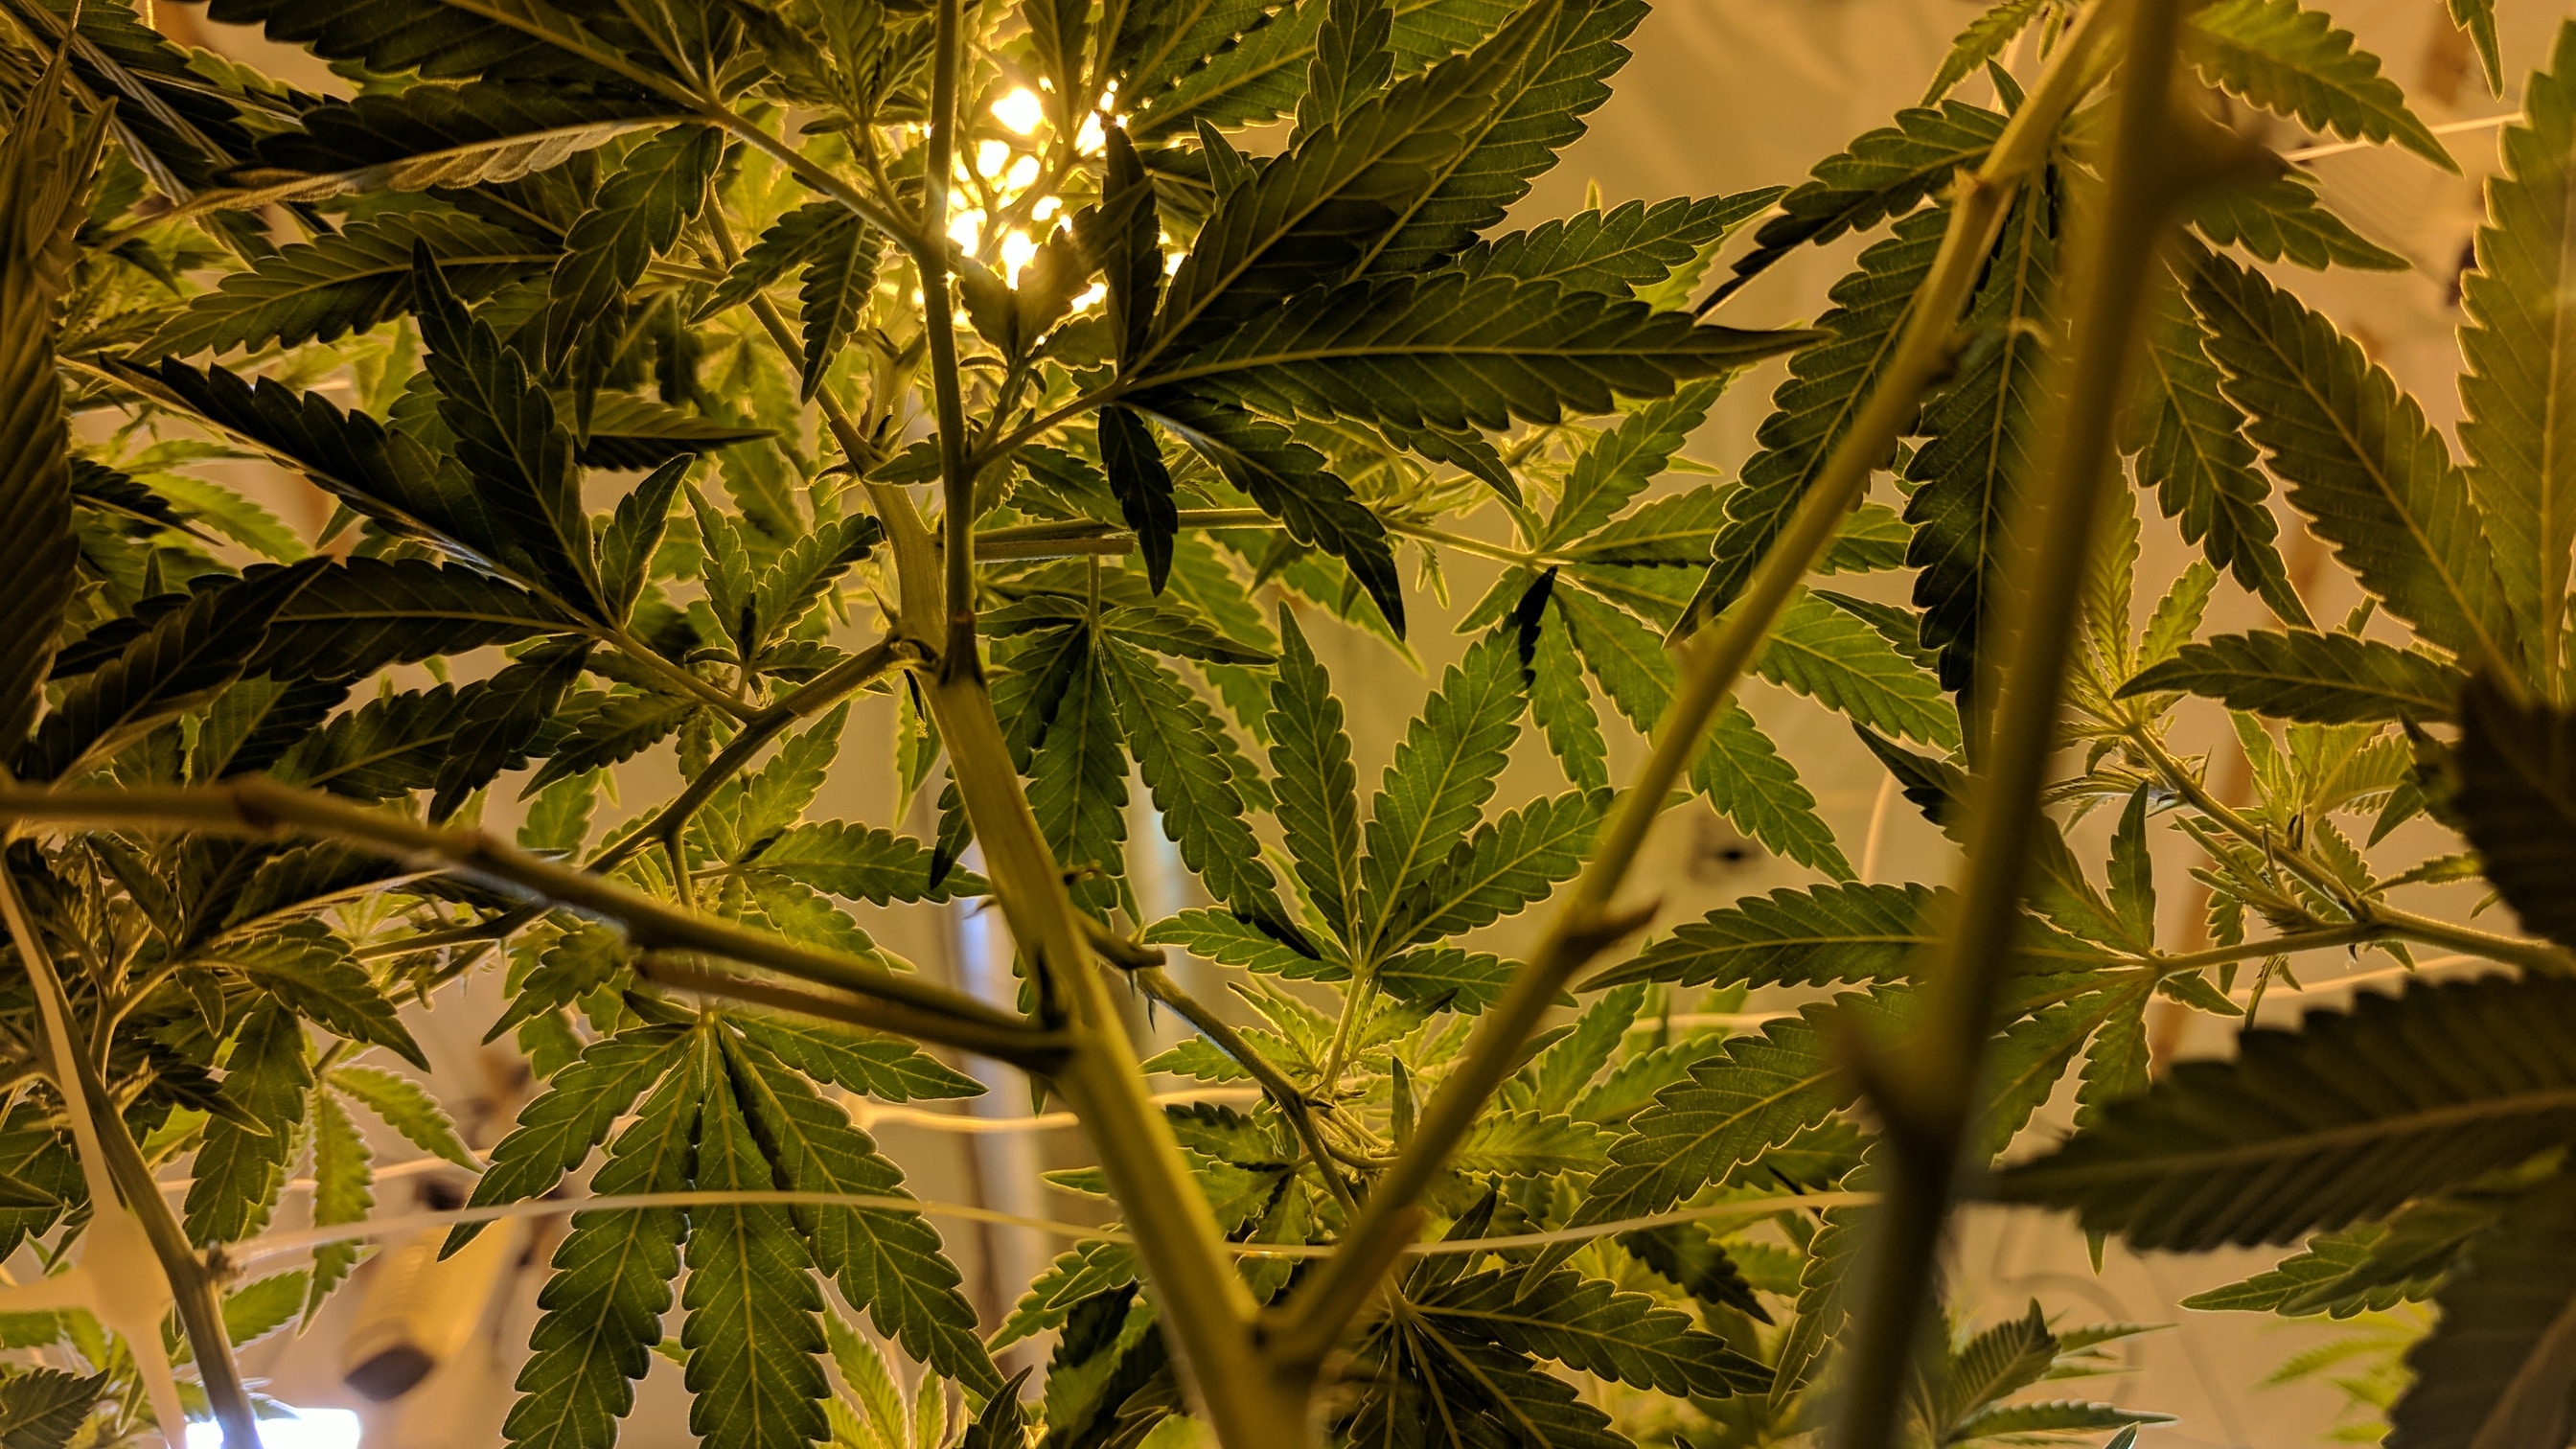 Marijuana plants (weed) seen from below.